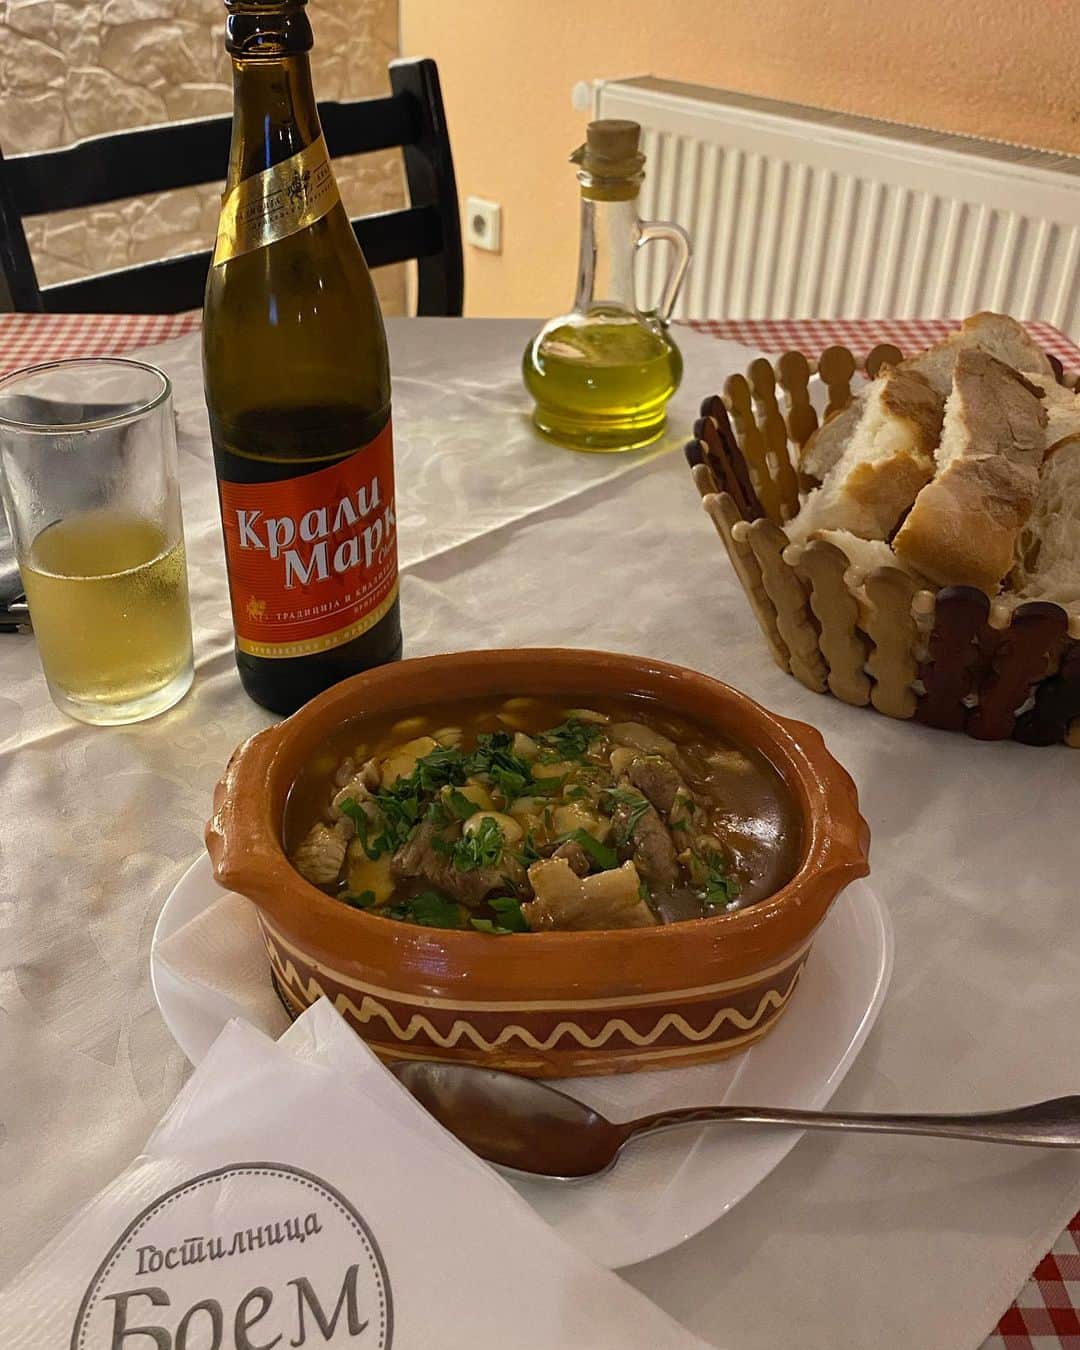 植村麻由さんのインスタグラム写真 - (植村麻由Instagram)「バルカンひとり旅 番外編🍽️ 旅の目的のひとつであり醍醐味でもある、現地のご飯。 今回の旅でもたくさんトライしたので、その一部を紹介しまっす！ ①Selsko Meso🇲🇰 マケドニア語で田舎風肉という意味らしい伝統料理。 キノコたっぷり、お肉もゴロゴロ、その旨みが滲み出た塩味ととろみが絶妙なスープ… この旅で個人的いちばんのヒット！ ②豆のスープとマケドニアンサラダ🇲🇰 どっちもハズレ。 マケドニアっぽいな(適当)と思って頼んだら、スープはどろどろでほぼ味なし、サラダは生の玉ねぎ、ピーマン、トマトがごろごろでこちらもほぼ味なし😆 口の中がしばらく玉ねぎだった😆 こういうハズレを引いちゃうときもあるのが旅の醍醐味！ ③ブレク🇲🇰 オスマン帝国の影響を強く受けているバルカン諸国ではよく見られる、朝ごはんの定番料理。 パイ生地で挽肉やチーズなどを包んで焼いたもので、文字通り、見た目通りヘビー。 今回はマケドニアで挽肉入りを食べたけど、アルバニアでもコソボでも見かけました。 コソボのホテルではチーズ入りが朝食に登場！ これを食べればお昼ごはんいりません。 ④ムサカ🇲🇰 日本ではギリシャ料理として有名？なムサカ。 今まで食べたことのある、ナスやマッシュポテト、挽肉を重ねたものとは全くの別物で、名前変えたほうがいいのでは…？と思うほど。 スライスしたじゃがいもと挽肉、卵、米に、トマトソースではない優しい味のソース(何ベースなんだろう)という、日本人も絶対好きなお味でした。 ⑤マケドニアの出汁🇲🇰 メニューに英語でMacedonian broth と書いてあって気になり注文。 野菜と挽肉の旨みが滲み出たスープに少しのお米が入っていて、優しくて美味しかった〜！ 二日酔いの日に飲みたい。 ⑥,⑦アルバニア伝統料理たち🇦🇱 サワークリームにピクルスやハーブが入ったスターター、ナスのオーブン焼き、ピーマンにお米を詰めて焼いたもの、ラムの煮込み、ナスとチキンの煮込みなど… ベラトの宿がいっしょで色々助けてくれたドイツ人カップルといろんな種類の伝統料理にトライ。 全部びっくりするくらい美味しくて、重くないけど食べ応えはあって最高でした。 1人だとこんなに種類頼めないから嬉しかったな〜！ ⑧ミートボール🇦🇱 メニューにBerat traditionalと書かれていた、ミートボールのオーブン焼き的なやつ。 想像通りの美味しさで当たり！ パンとビールが進んでしまうお味でした。 ⑨Japrak🇦🇱 お米とハーブをブドウの葉で巻いた伝統料理。 さすがにお肉以外が食べたくなり(内陸の山岳部なので名物料理がお肉ばかり)、こちらをチョイス。 食べたことない不思議な味だったけど完食しました。 それよりも後ろのクラフトビールが美味しかった！ そして500mlで400円ほどとコスパ最強！ ⑩チェバプ🇽🇰 呼び方は国によって若干違えど、バルカン諸国やトルコなどでよくみられるこの地域の伝統料理。 ミンチ肉にスパイスやハーブを混ぜてグリルした、シンプルの極み料理。 5年前にボスニア・ヘルツェゴビナで食べた時も思ったけど、結構しょっぱくて飽きやすいのに付け合わせの野菜とピタパン(とビール)がついつい進んでしまうという、魔法のグリル肉。  という感じで、日本人にはあまり馴染みのないバルカン諸国のご飯の一部を勝手に自己満紹介でした✌️ 素材を活かしつつもスパイスやハーブがたっぷりなものが多くて、個人的に好みなものが多かったな〜！ 次は海沿いのほうに行ってシーフードをたらふく食べたい！」10月21日 19時35分 - oeufmayu